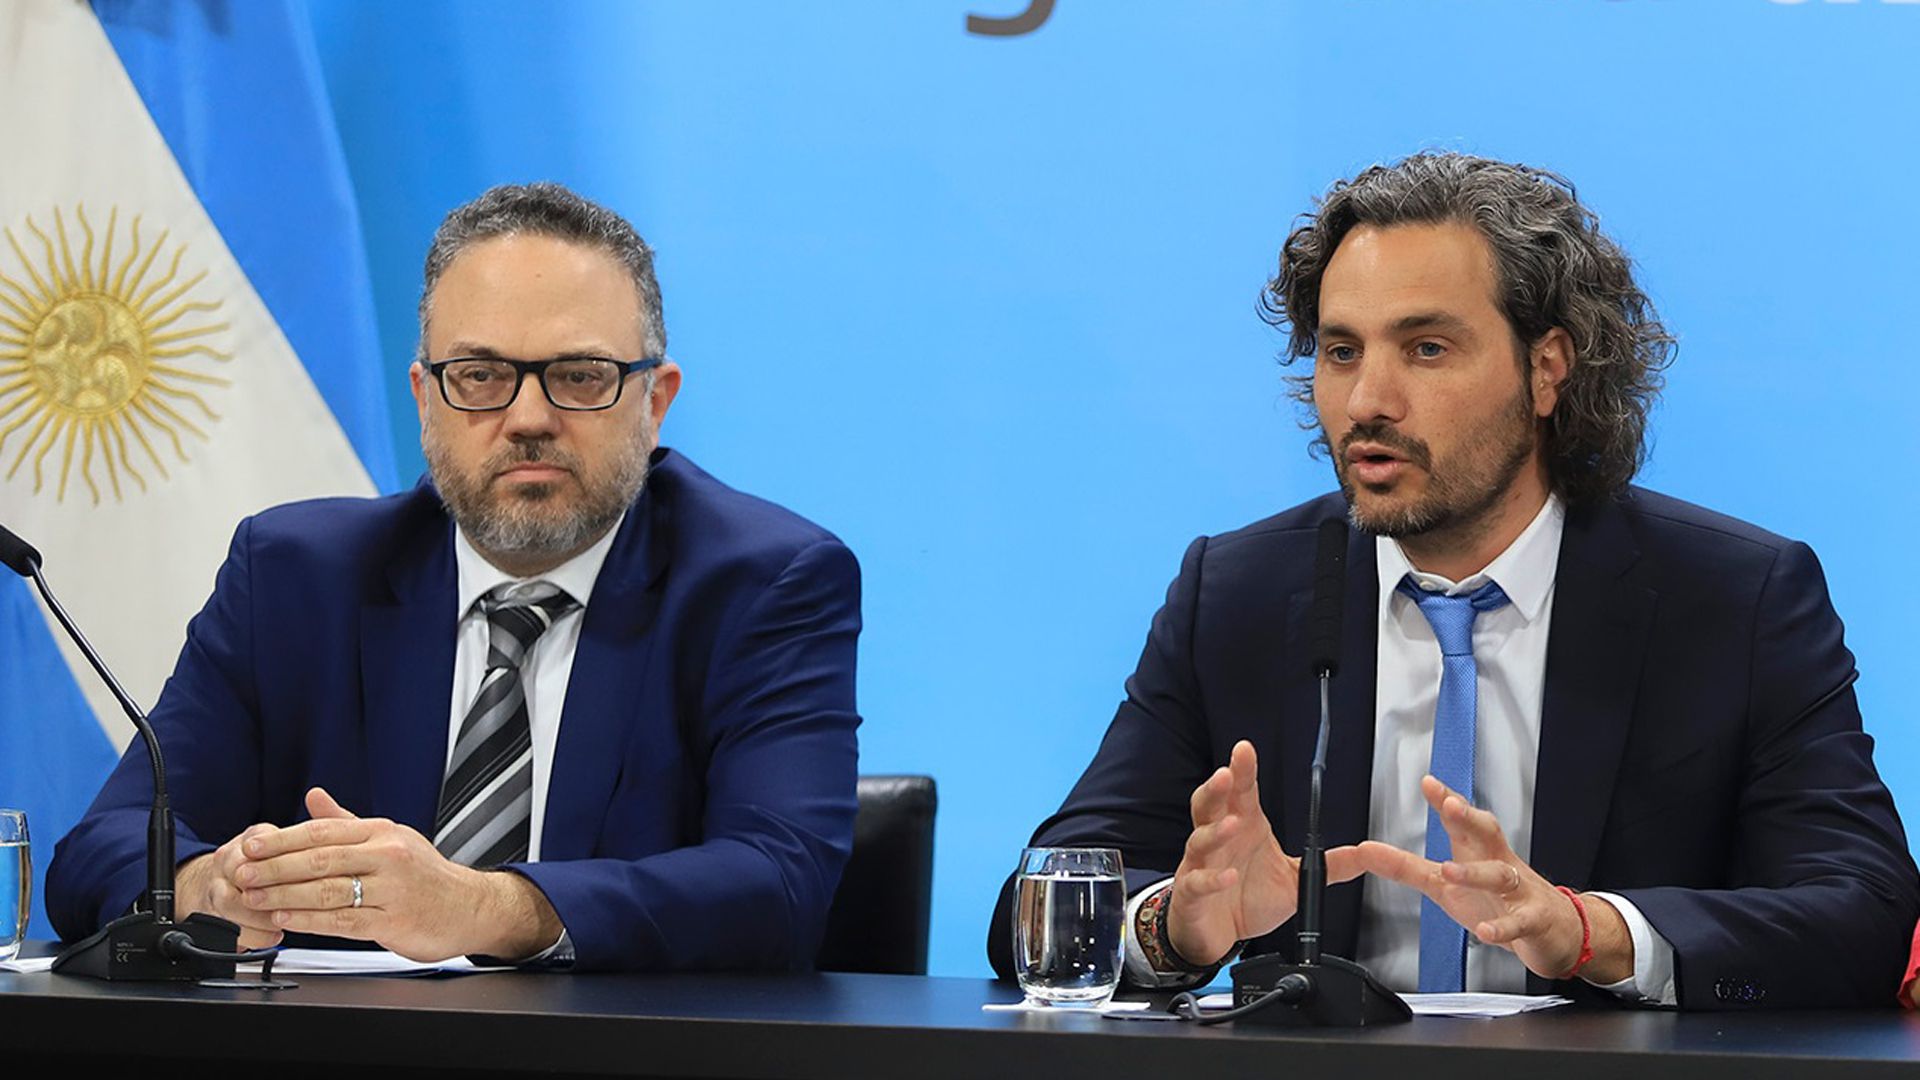 El ministro de Desarrollo Productivo, Matias Kulfas y el jefe de Gabinete, Santiago Cafiero, hablaron de descongelamiento, pero el presidente relativizó el tema 